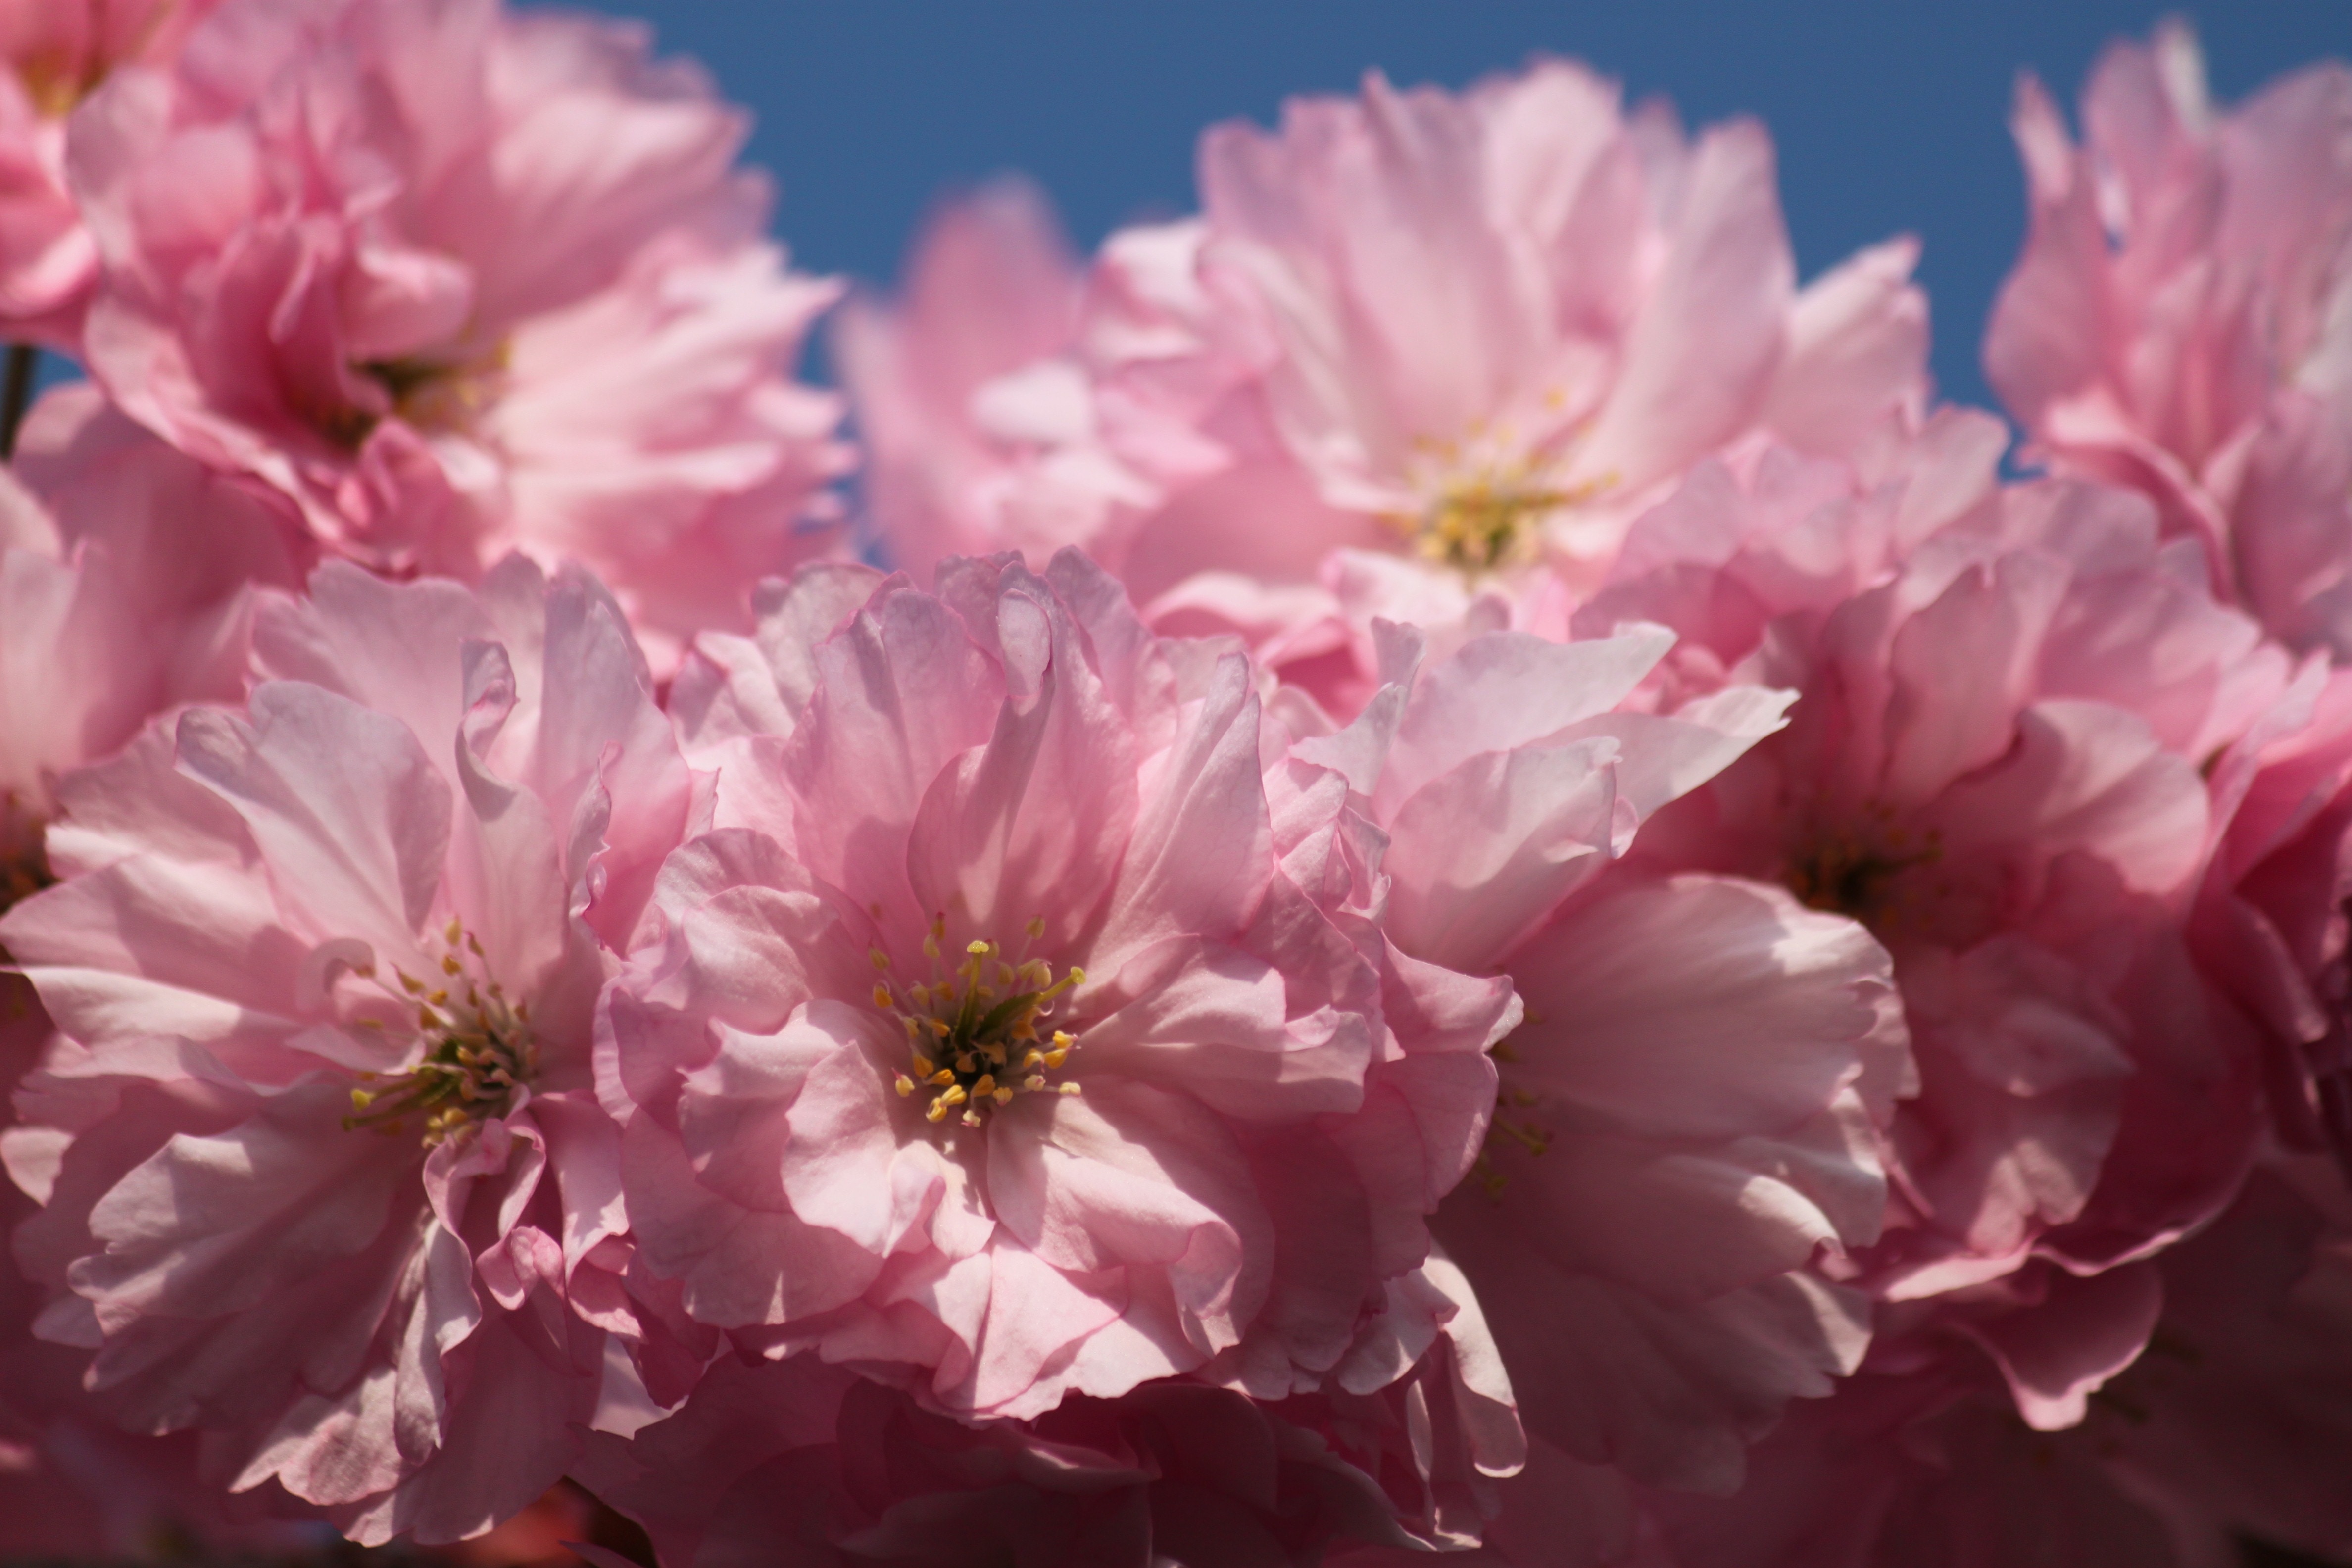 pink full bloomed carnation flowers